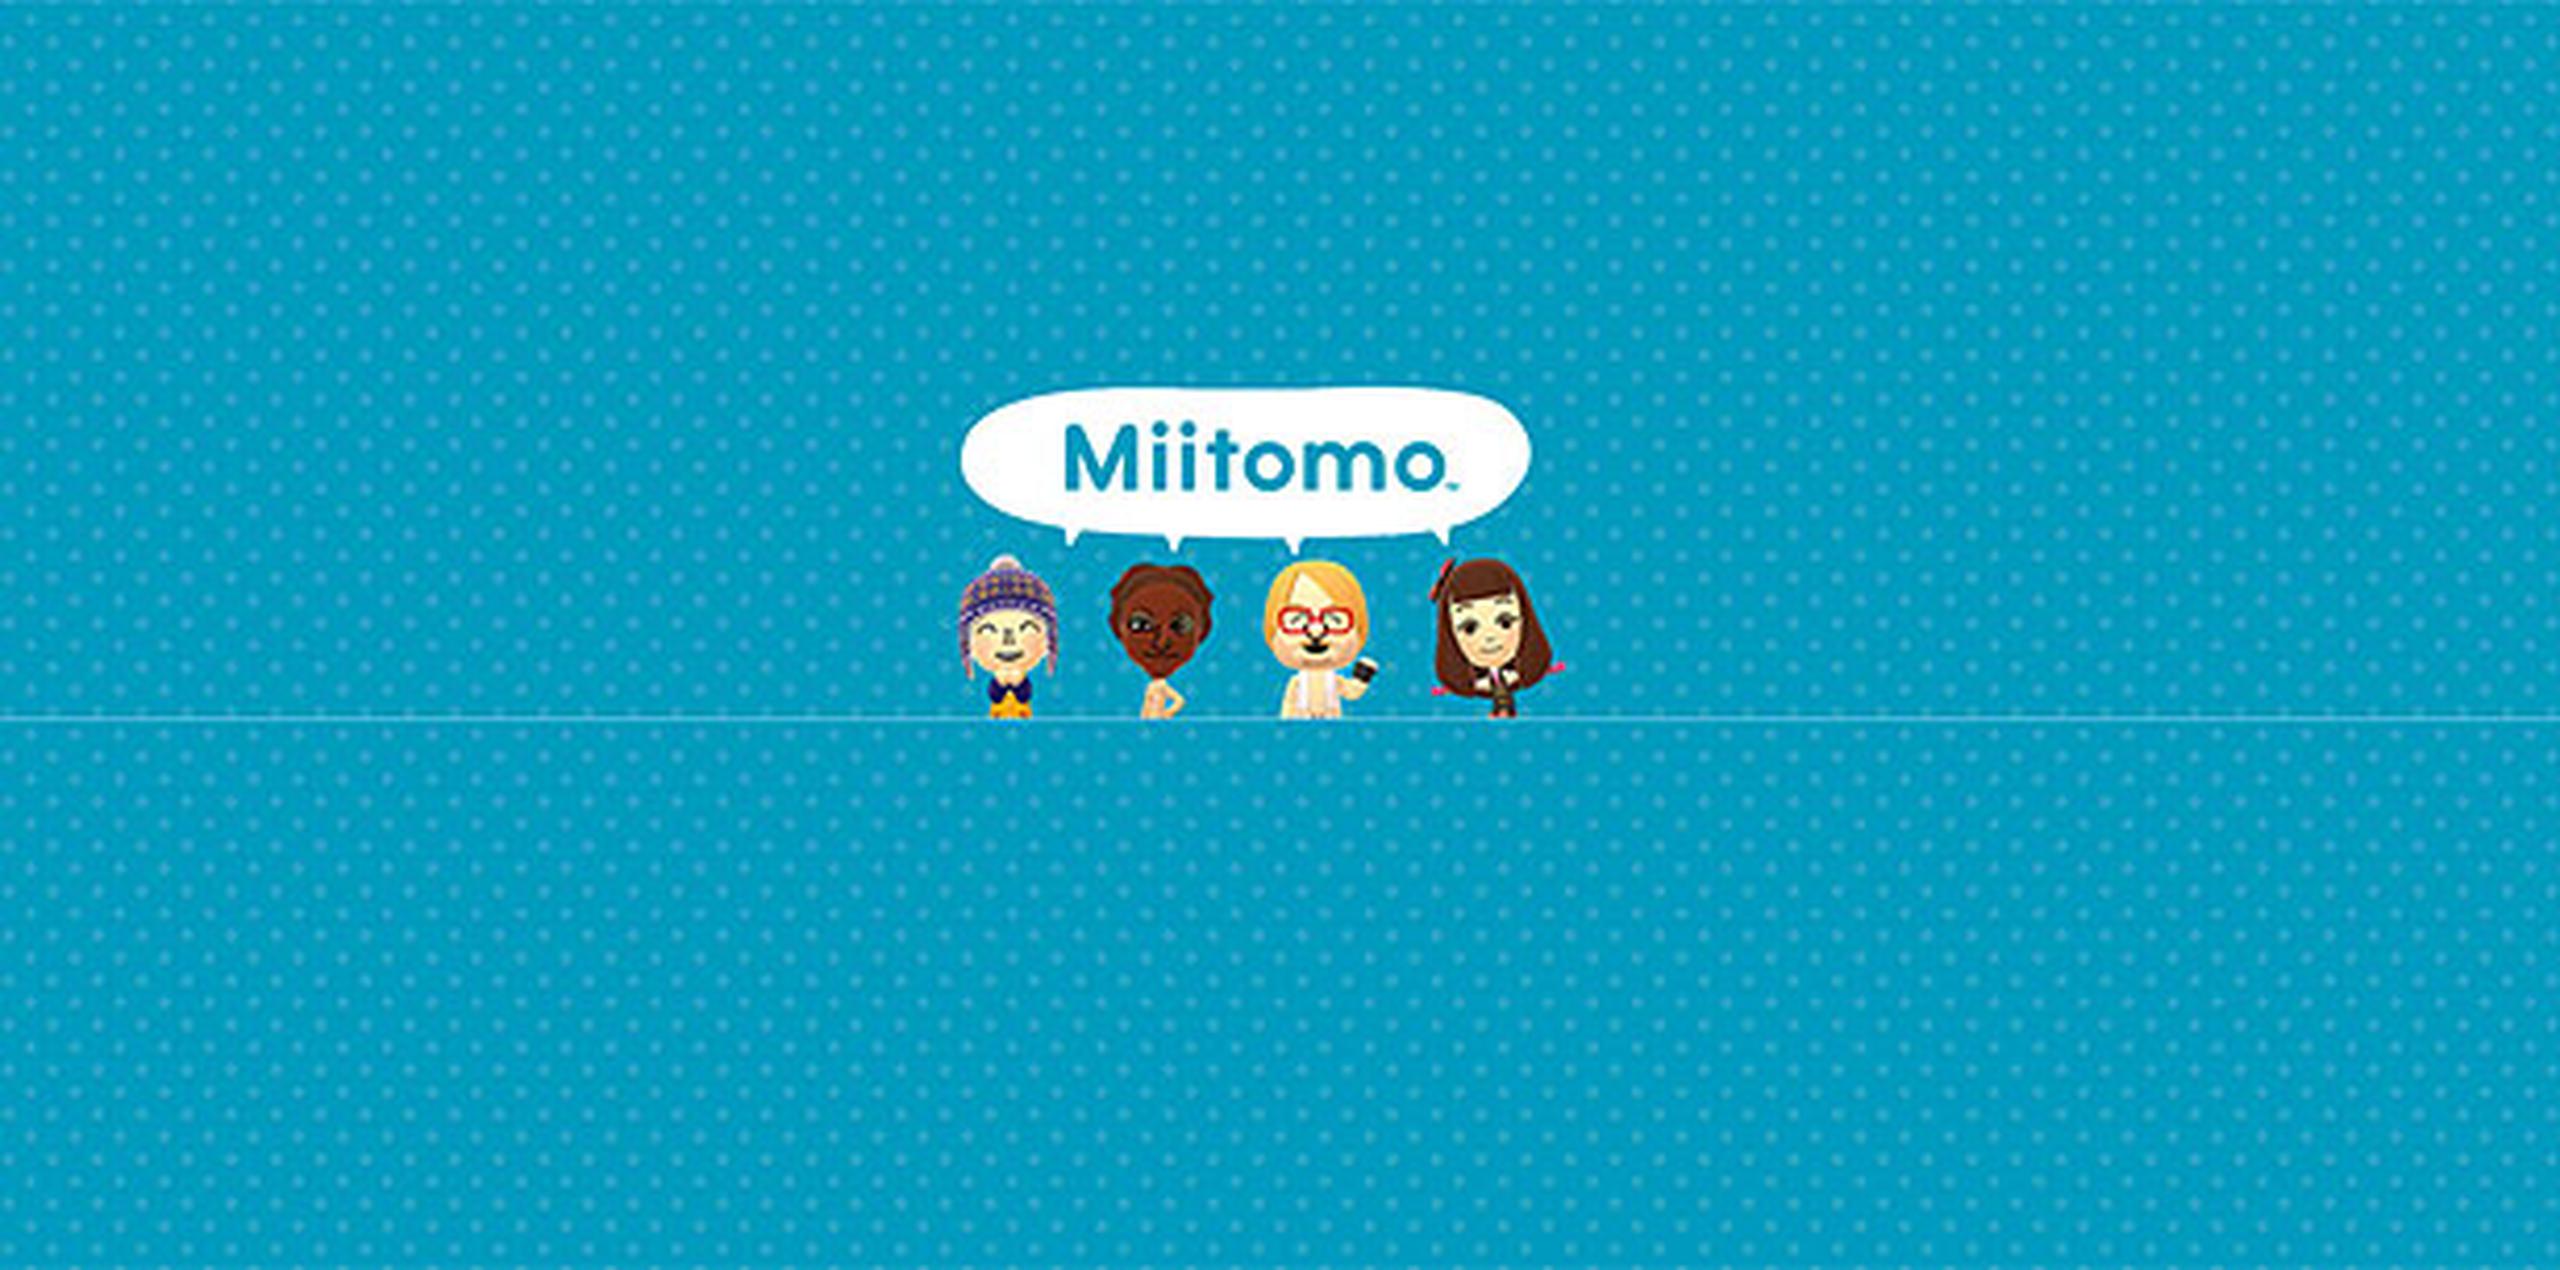 La aplicación se llama Miitomo. "Tomo" en japonés significa "amigo". (http://www.miitomo.com)